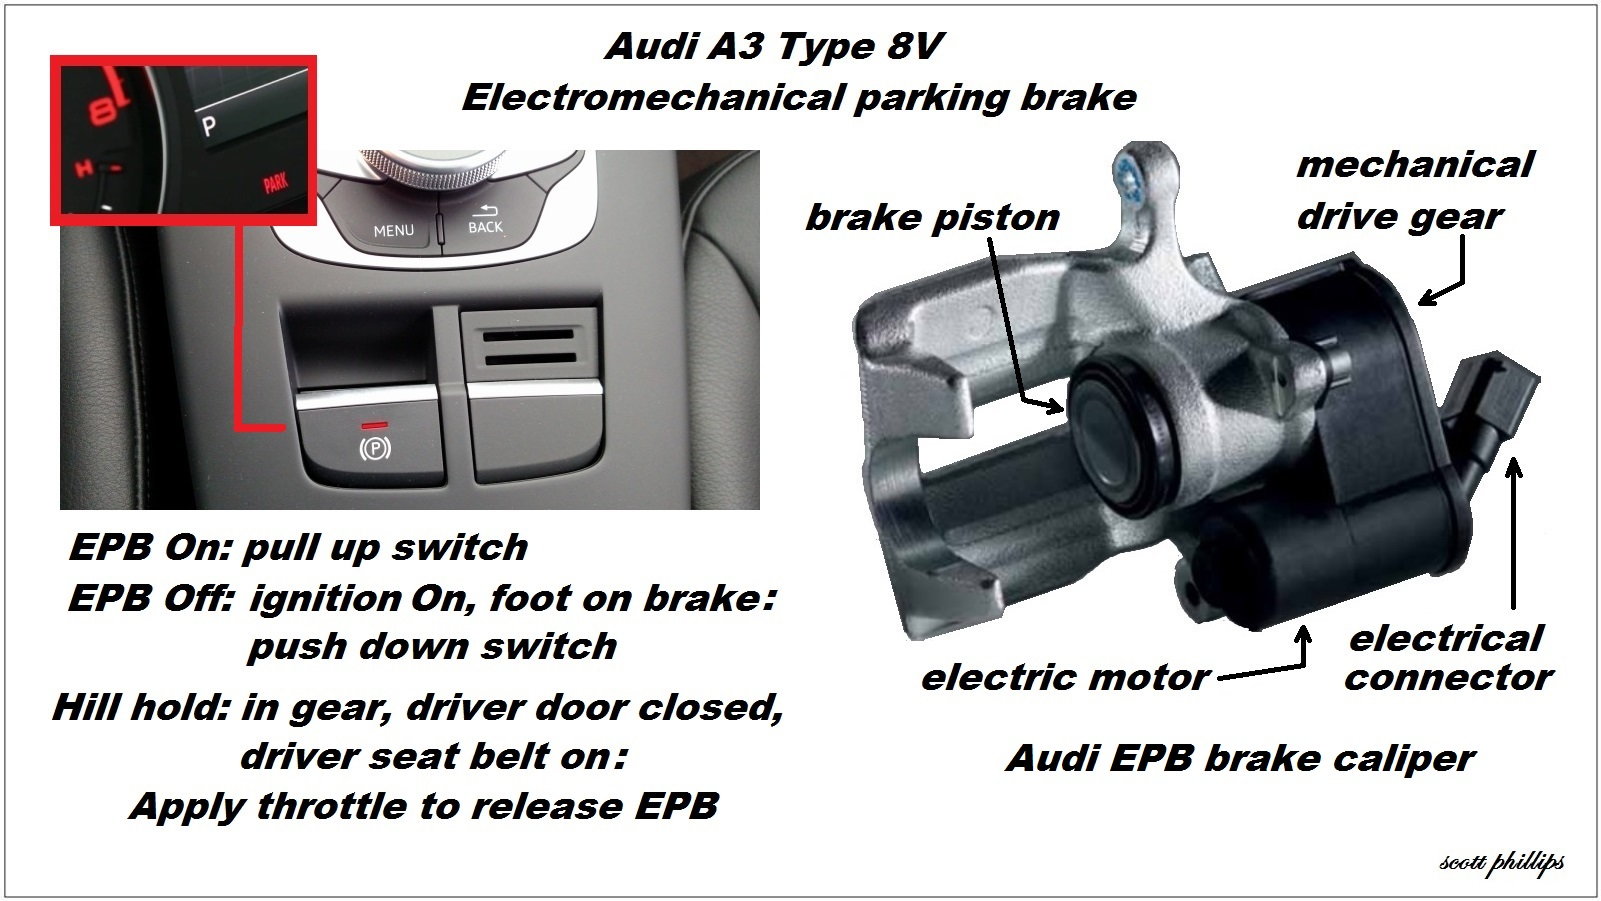 Electromechanical parking brake